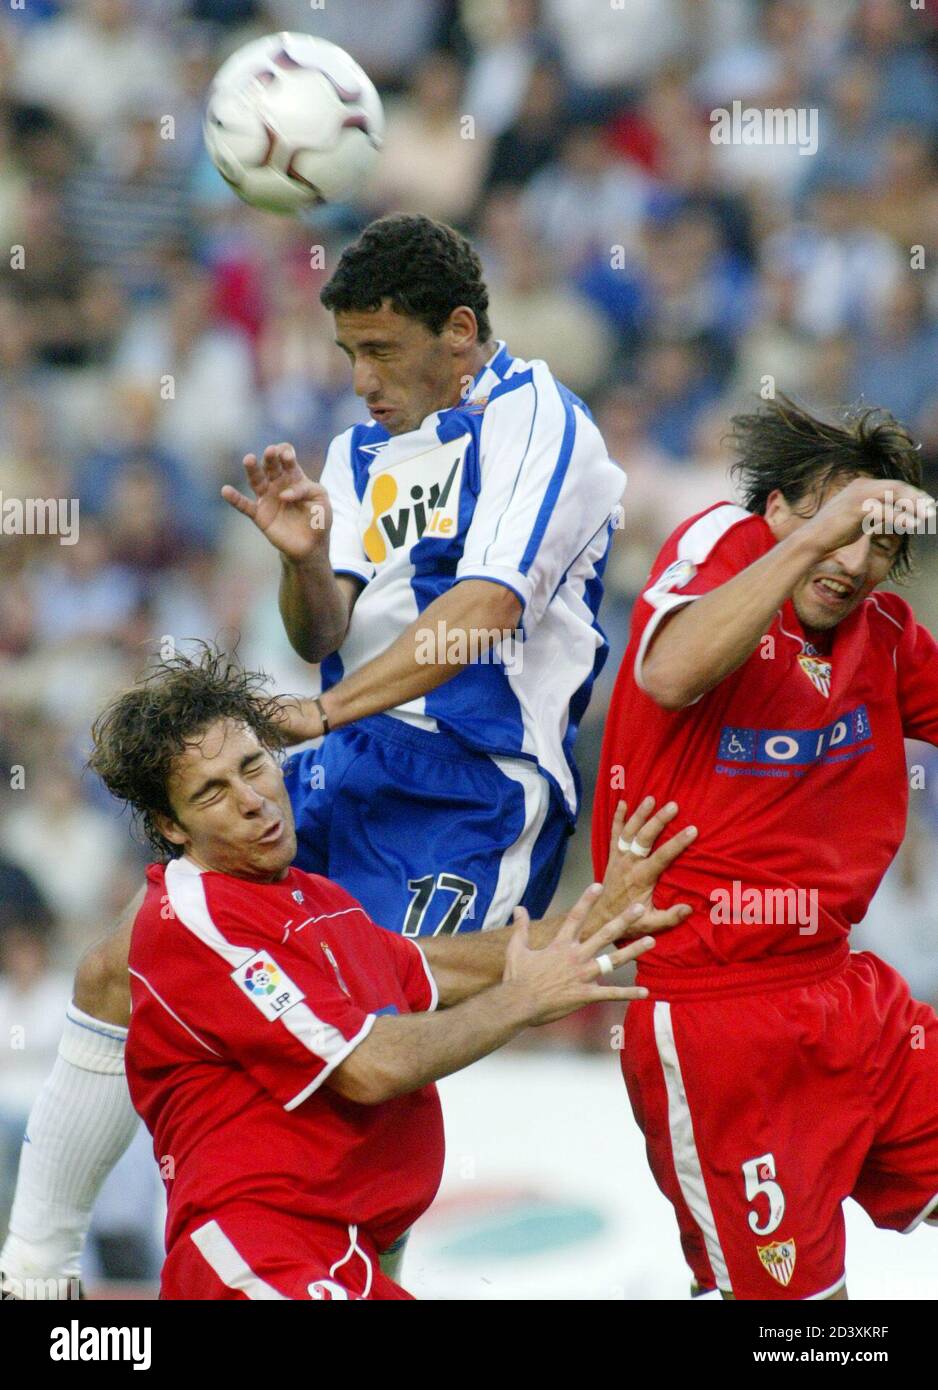 El argentino Maxi Rodríguez (C) del RCD Espanyol salta por el balón contra  el español Casquero (L) y Njegus (R) durante un partido de fútbol de  primera división en Barcelona el 29